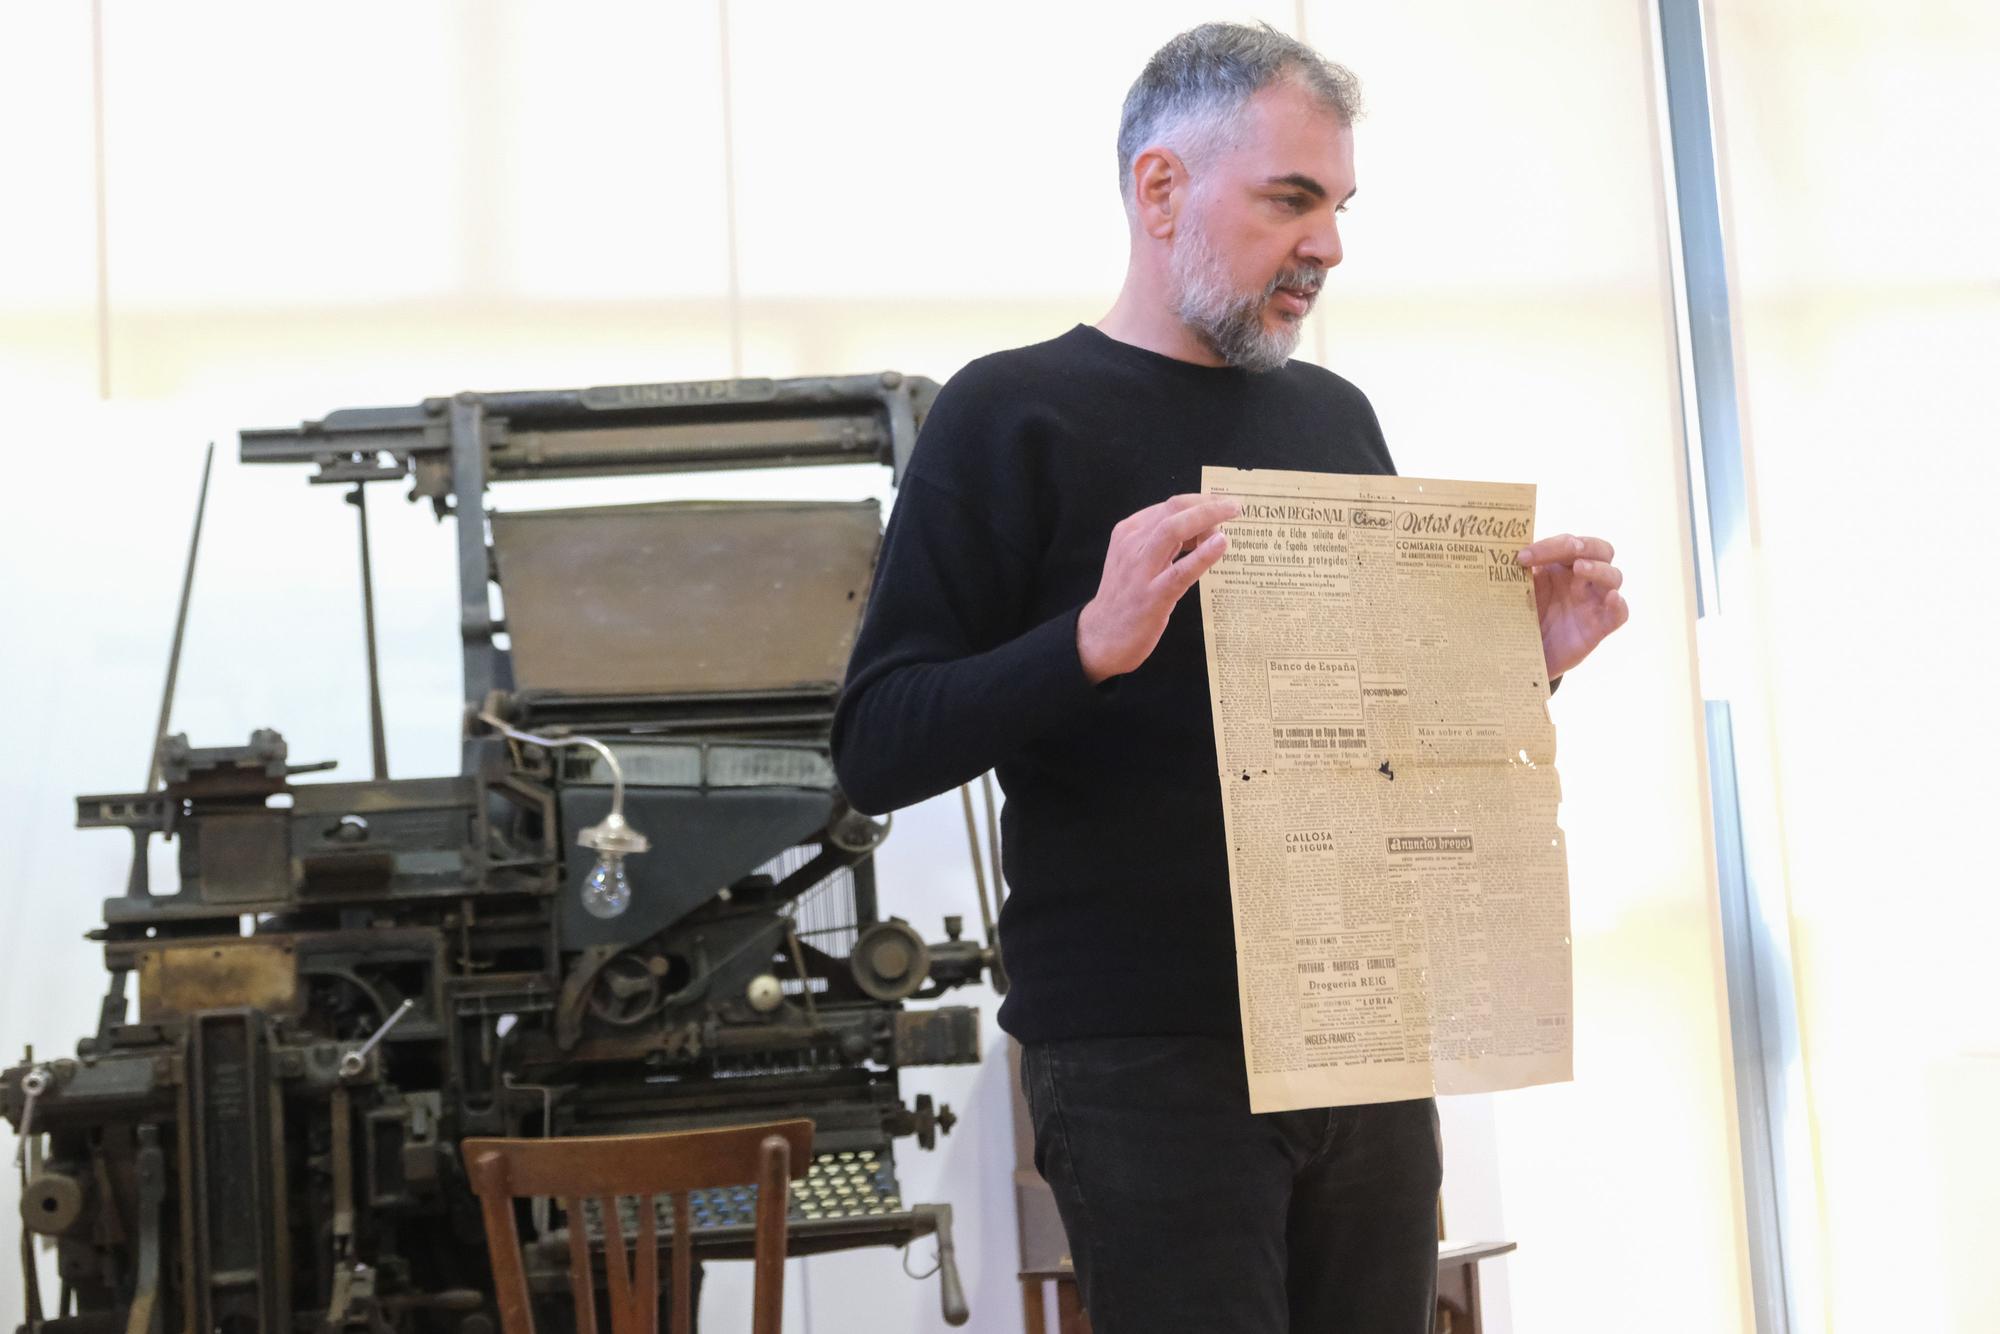 "Un taller de noticias", la nueva exposición del Museo Escolar de Puçol que recrea la antigua imprenta y redacción del Diario Información.